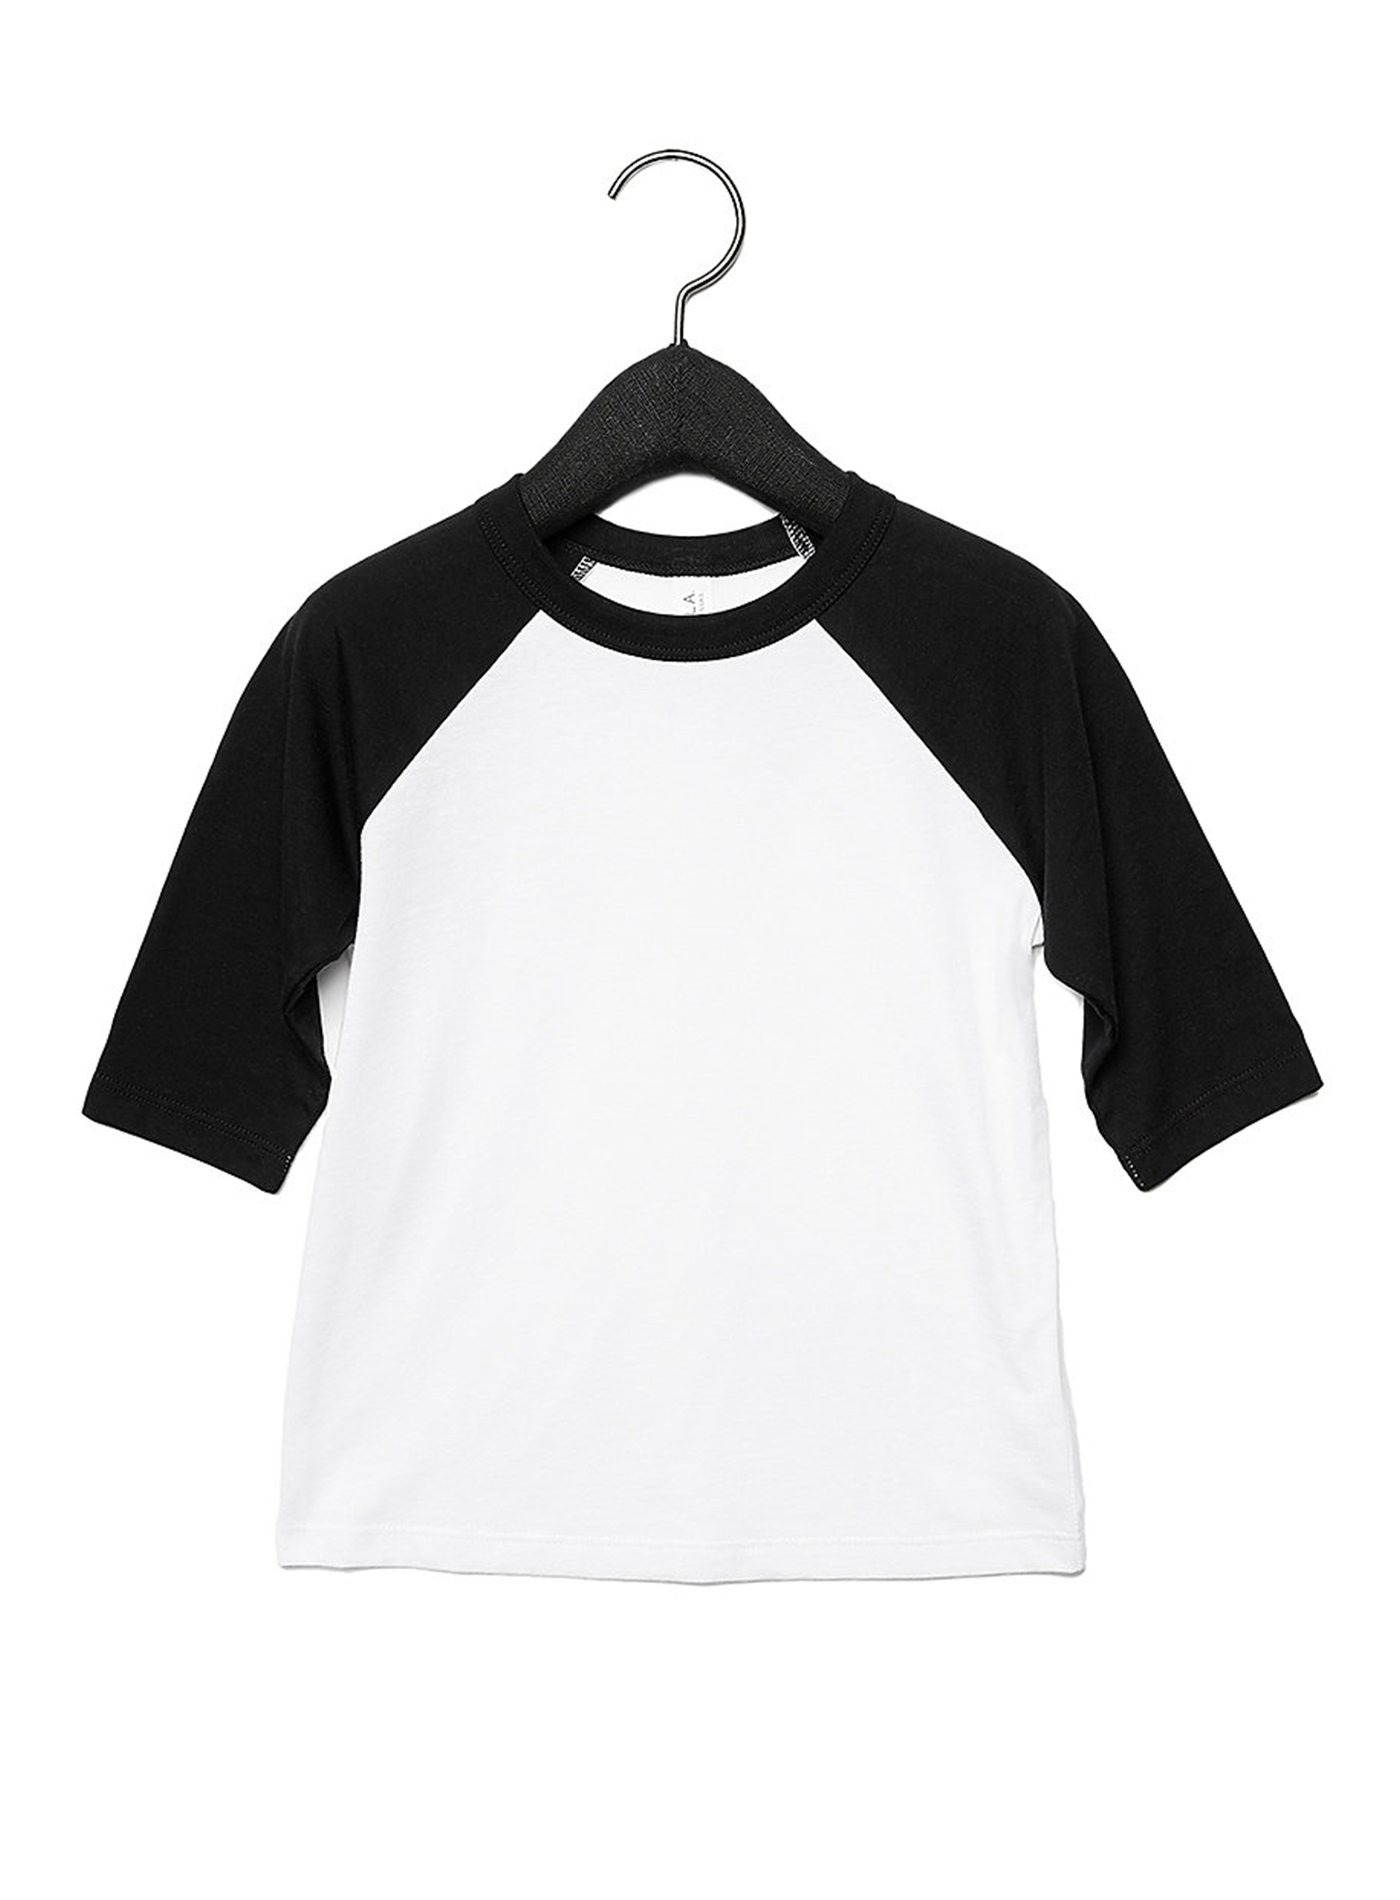 Dětské tričko se 3/4 rukávem Bella+Canvas Baseball Tee - bílá/černá 2T (92)